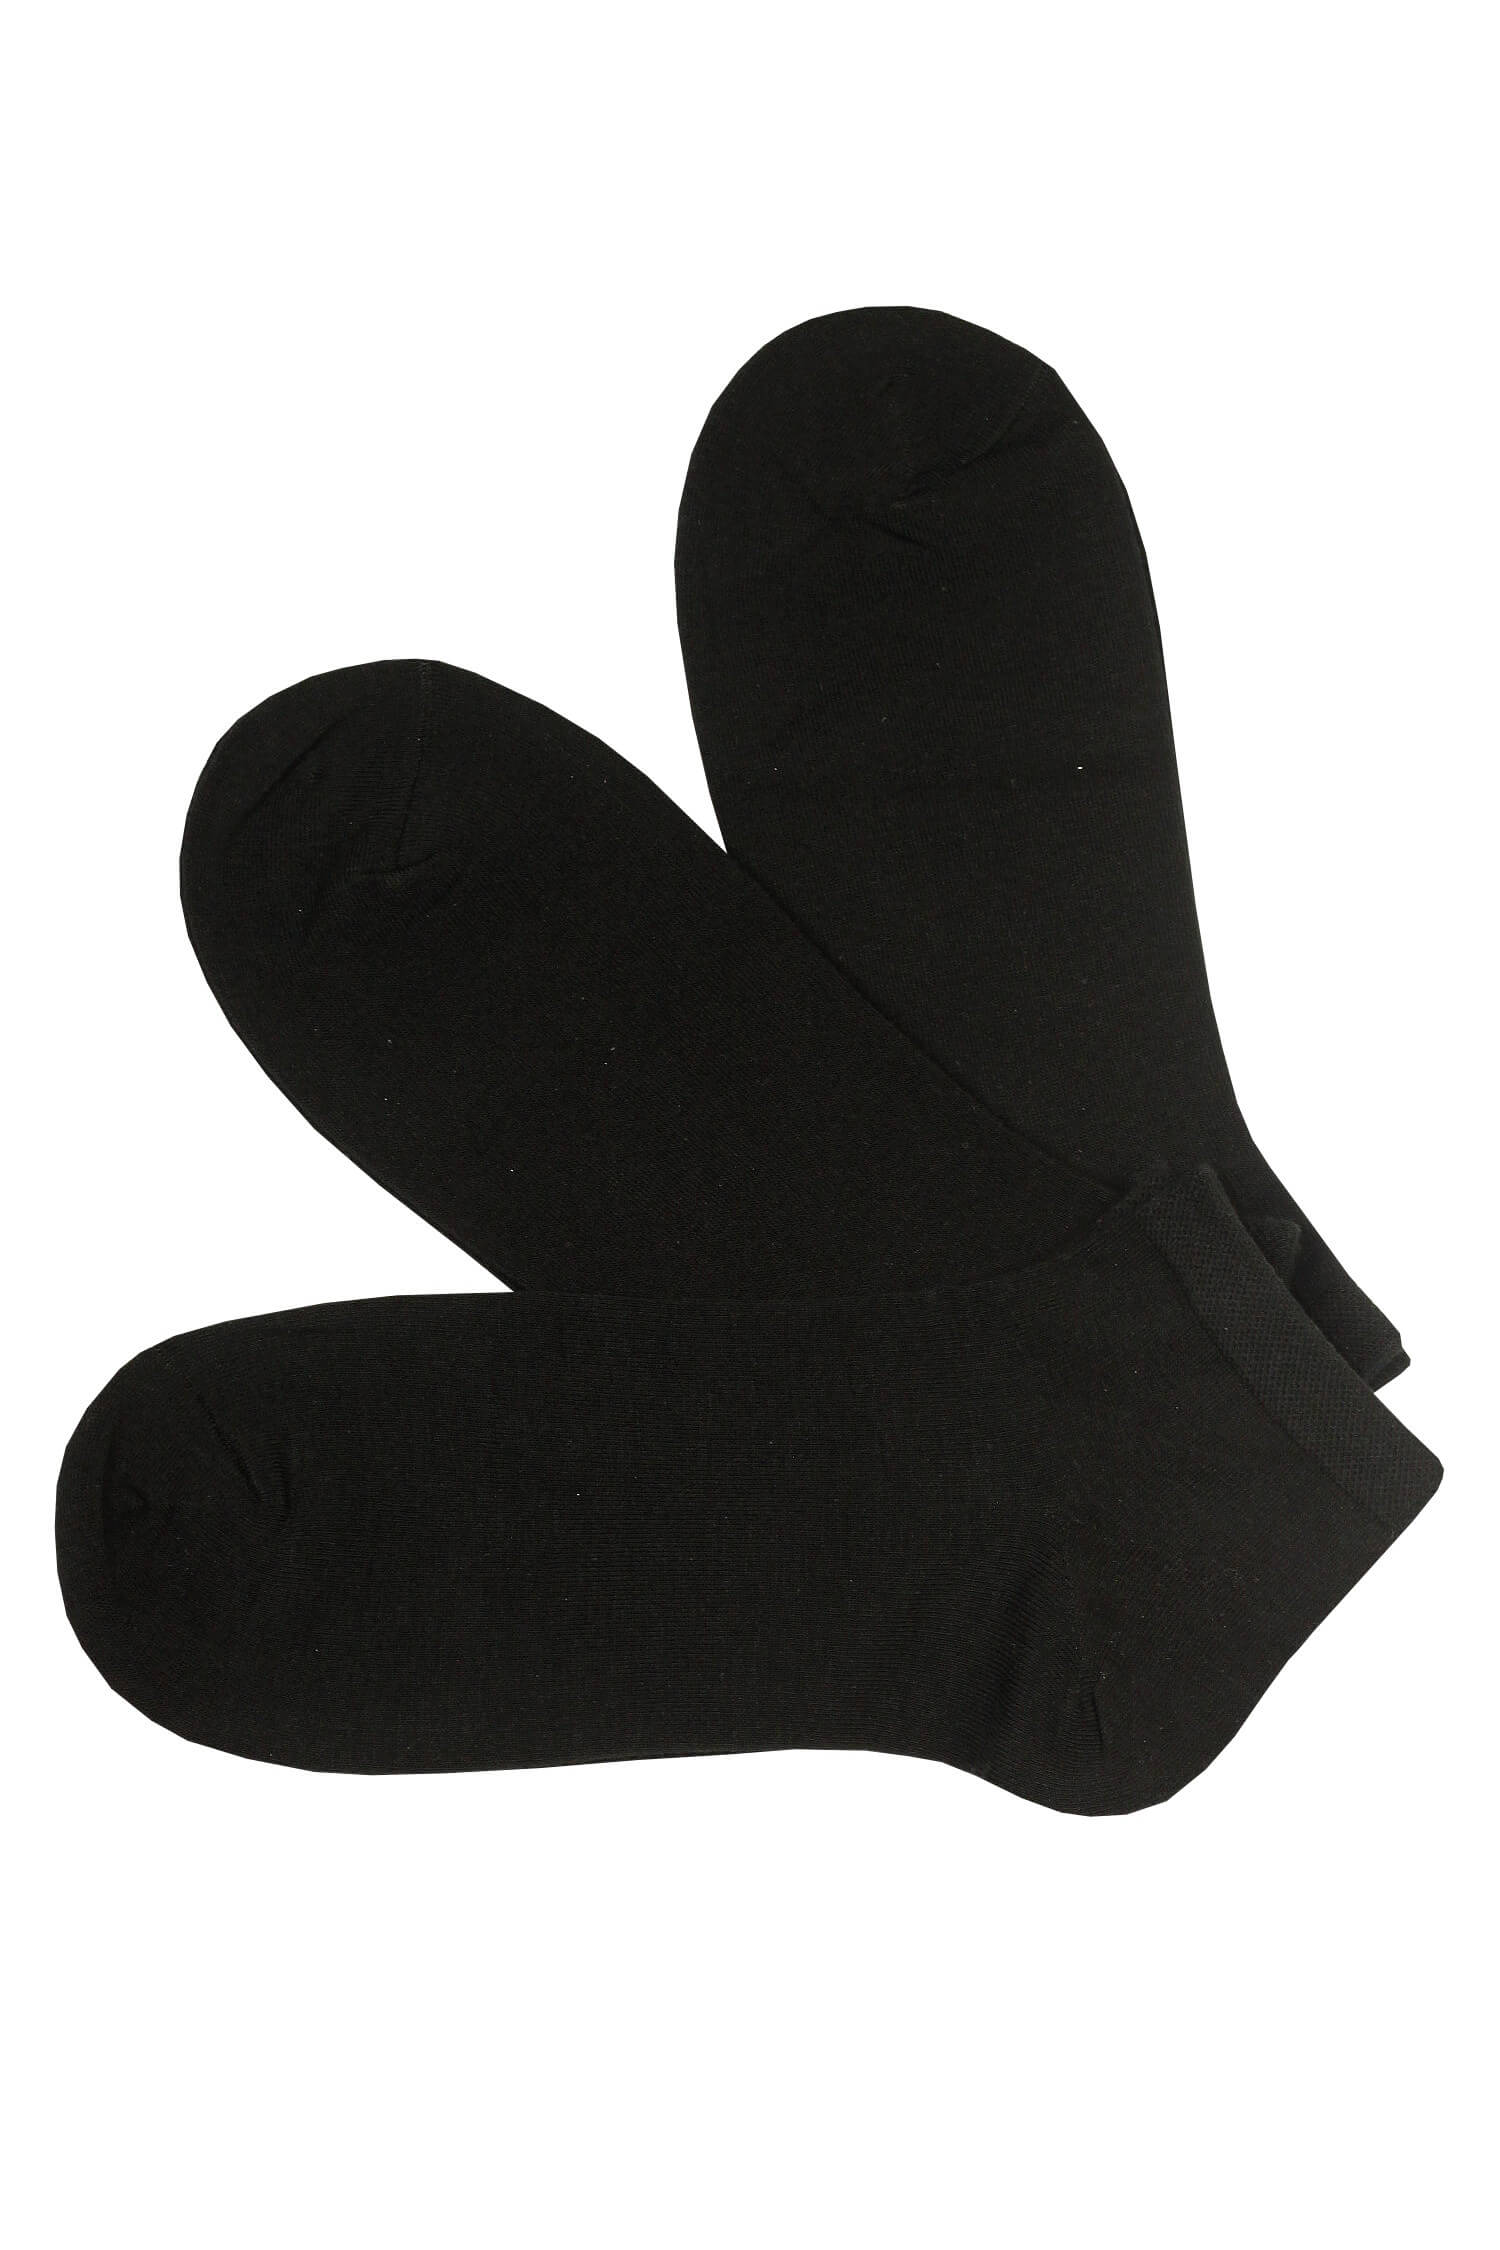 Dámské kotníčkové ponožky EW001C- 3páry 39-42 černá